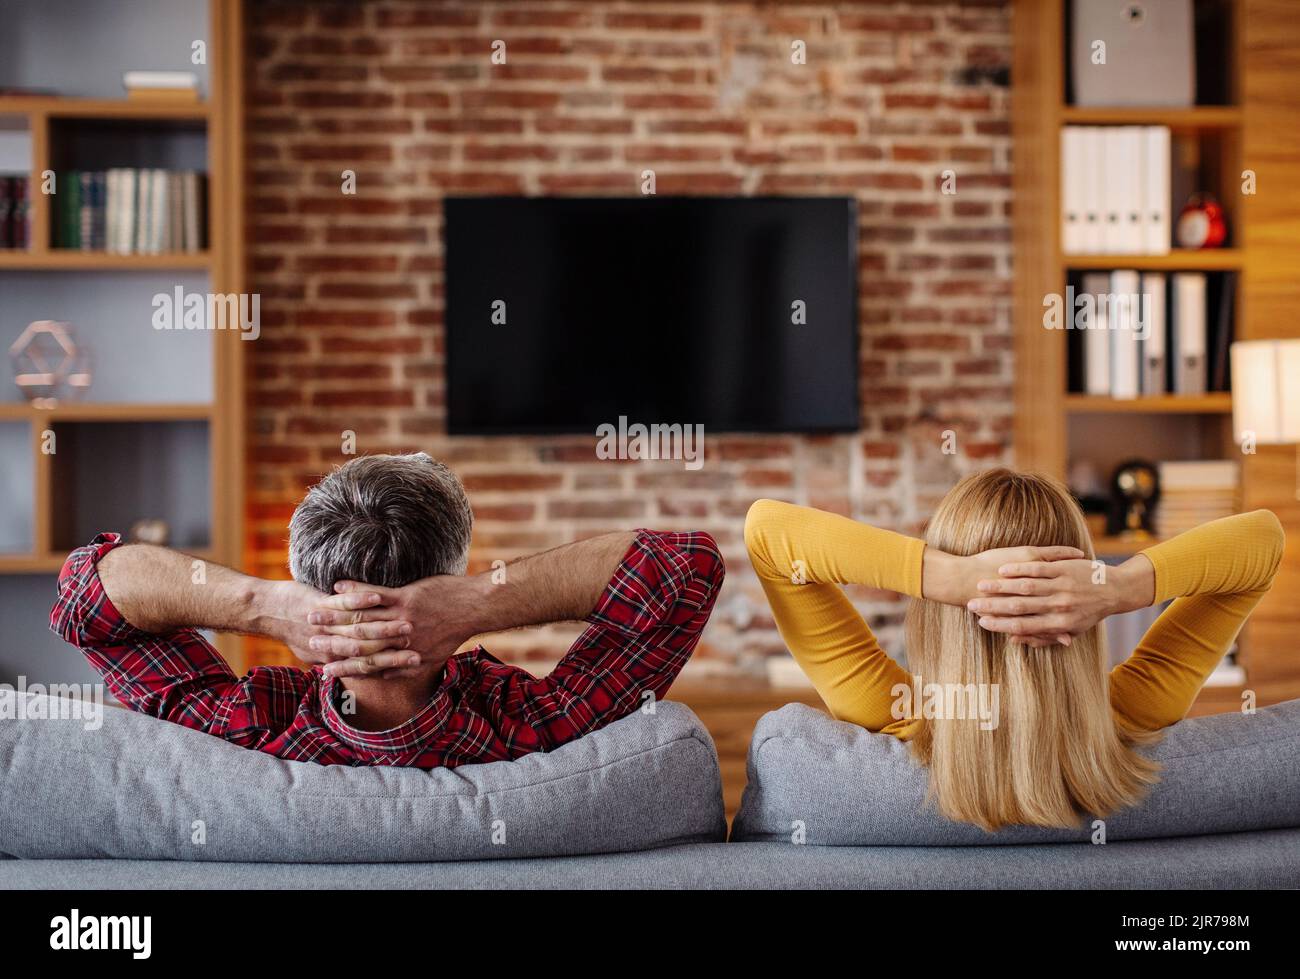 Sorridente marito e moglie caucasica di mezza età si rilassano, guardano la tv con schermo vuoto e si godono del tempo libero Foto Stock